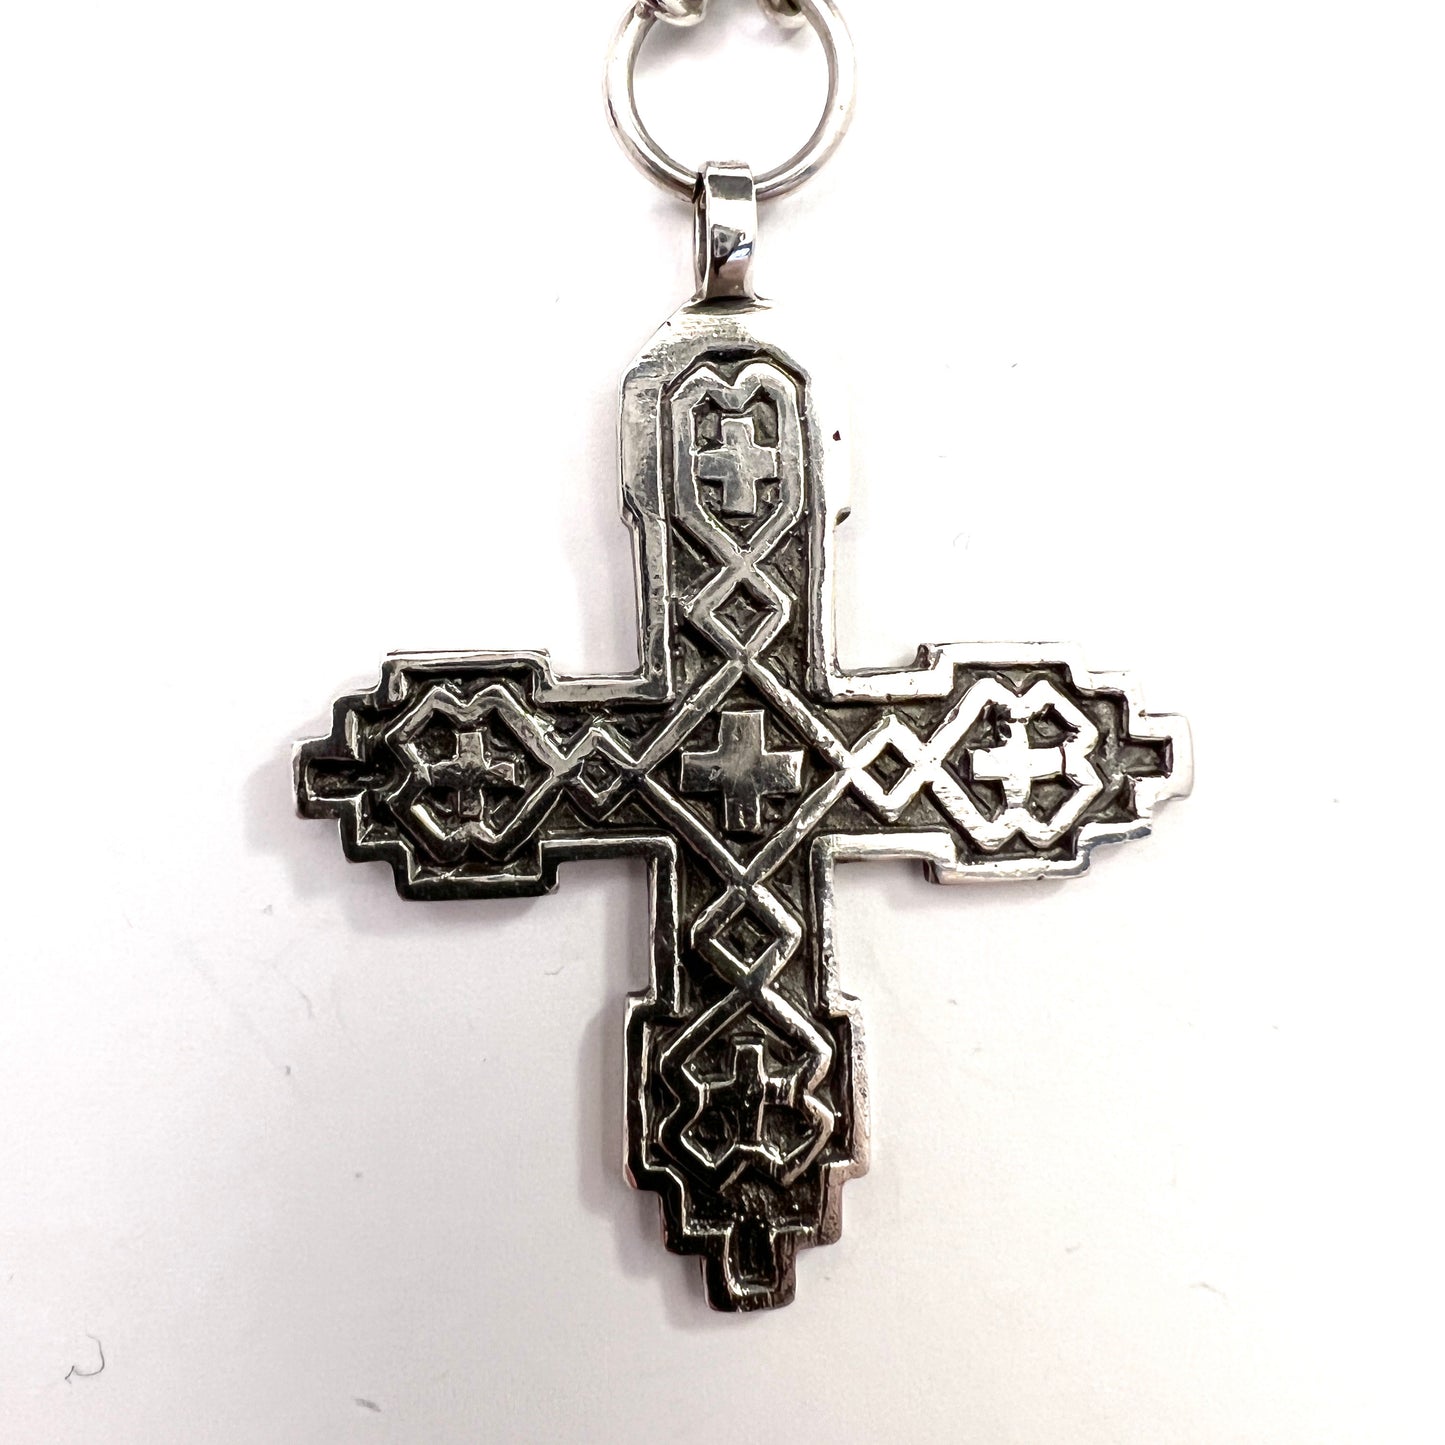 H.Kaksonen for Kalevala Koru, Finland 1951. Vintage Solid Silver Cross Pendant Necklace.